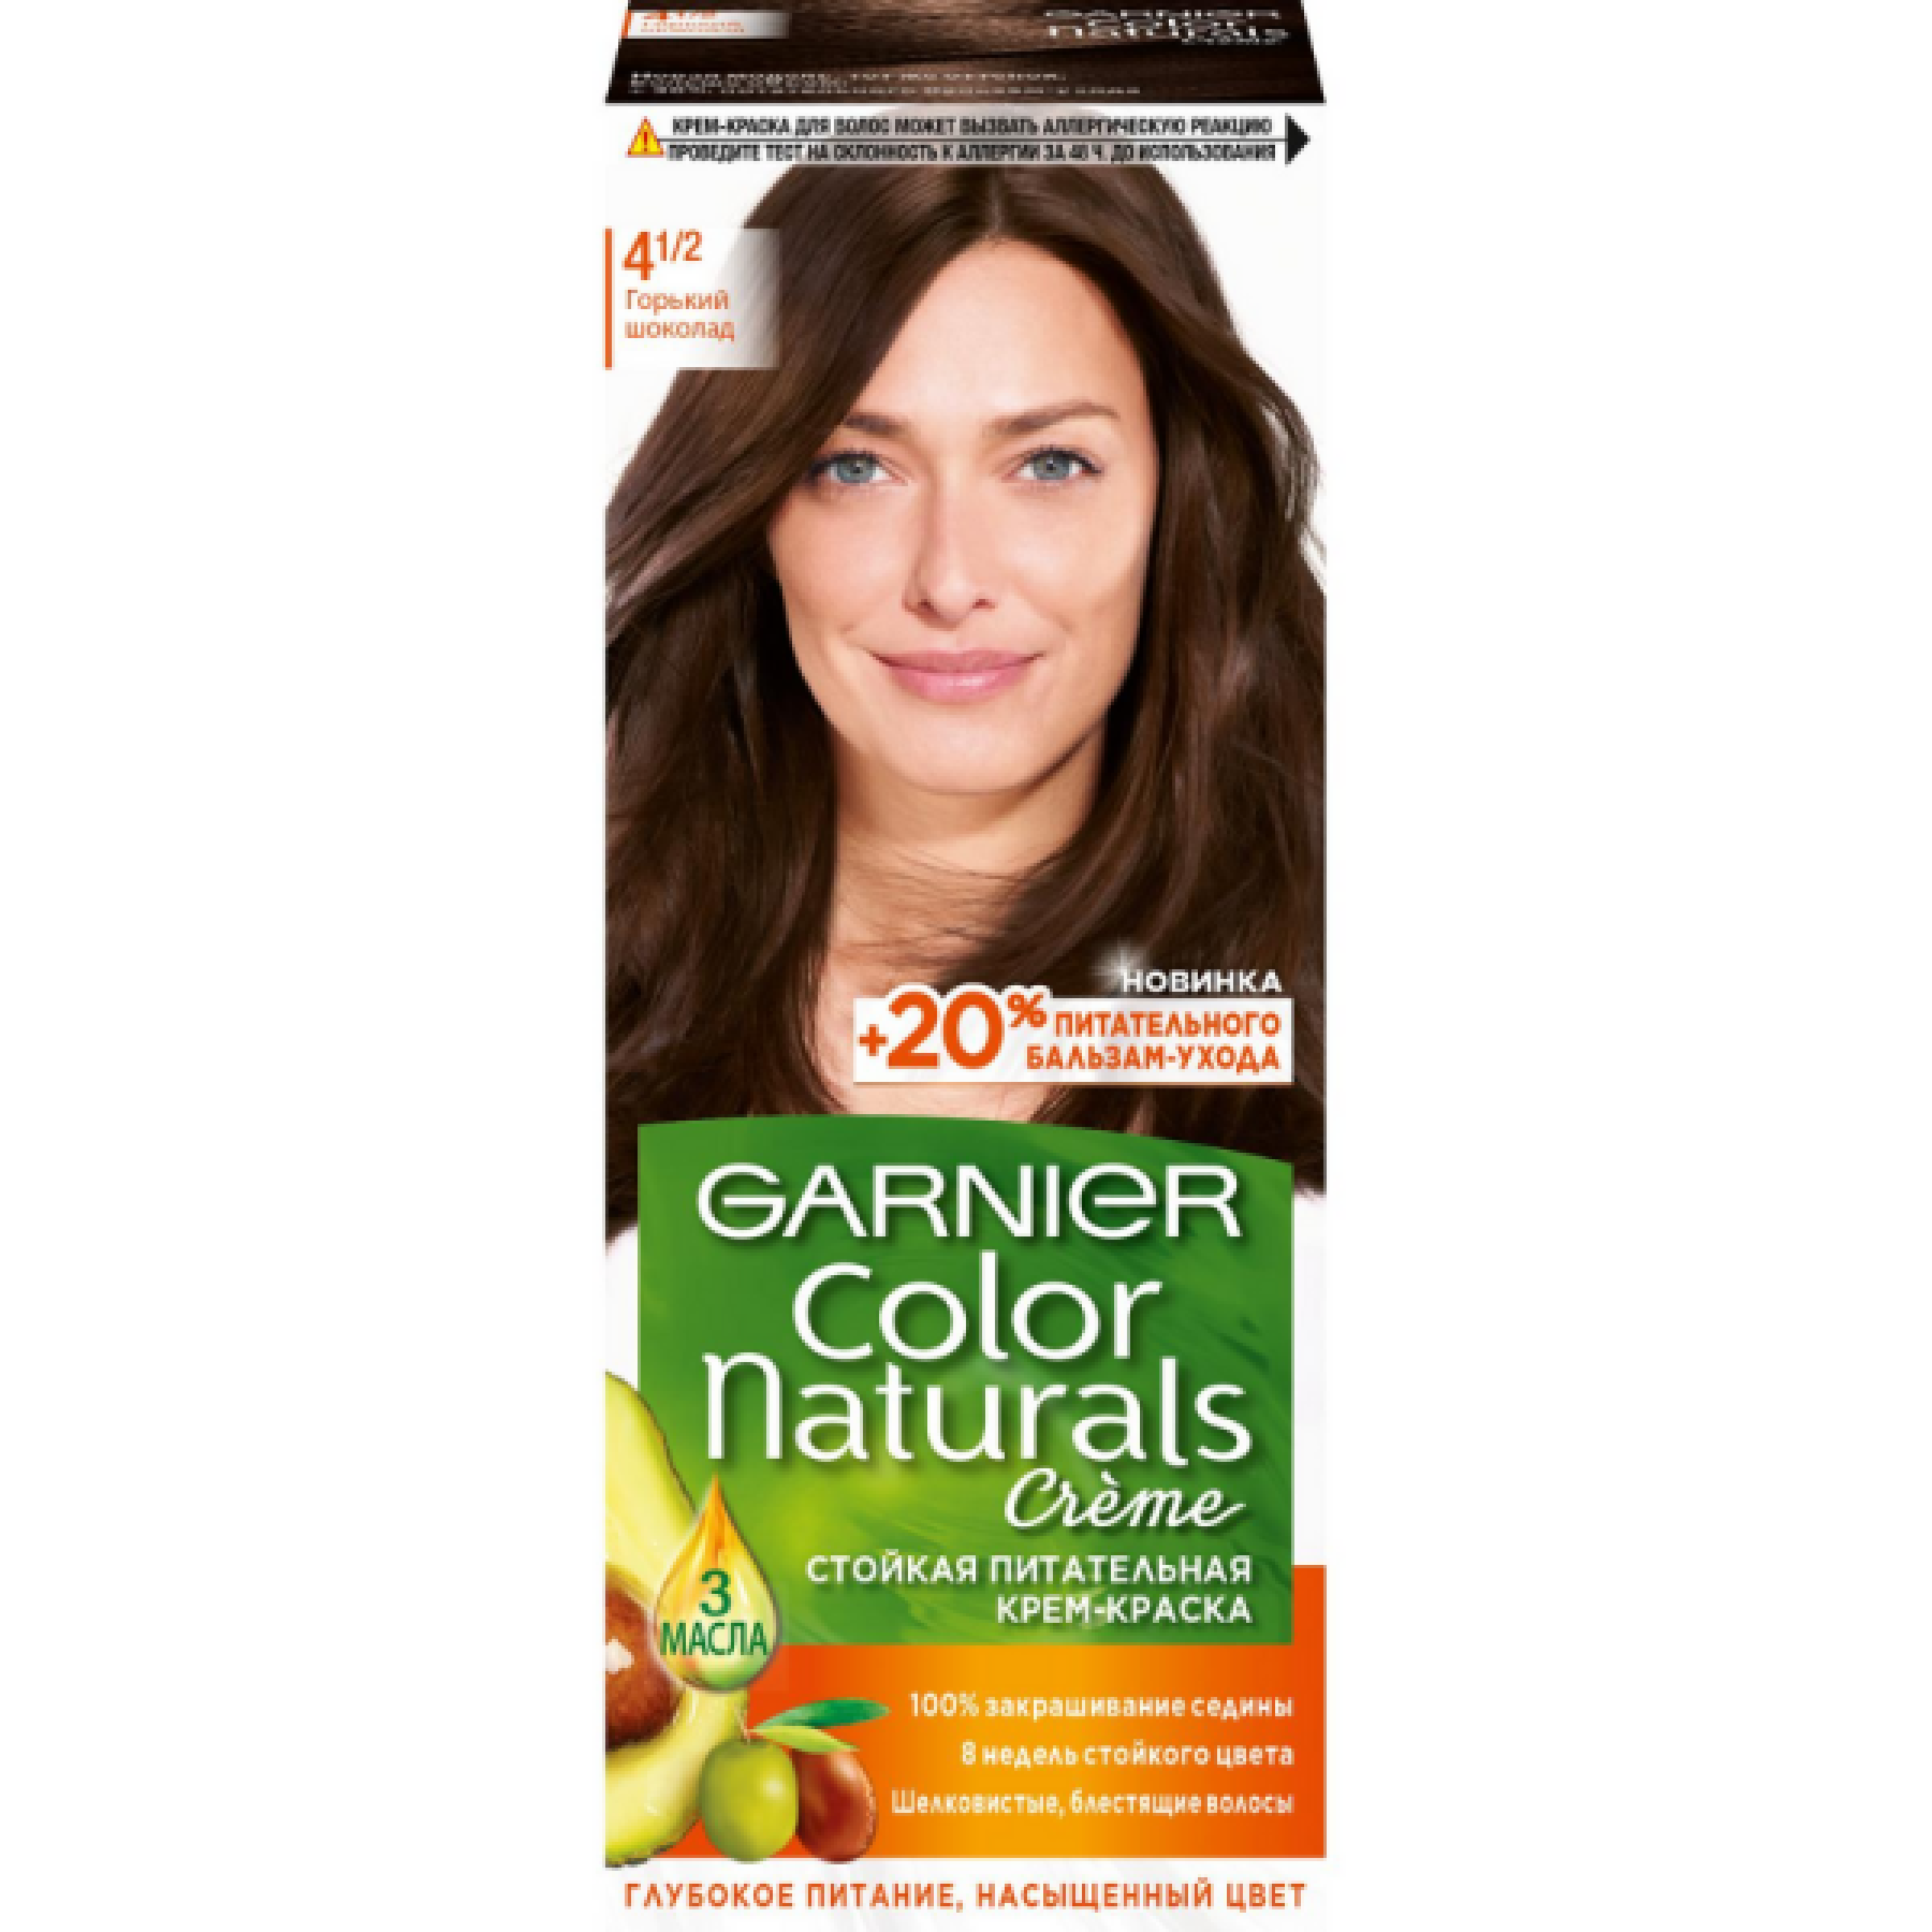 Стойкая крем-краска для волос Garnier Color Naturals тон 4.1/2 Горький шоколад, 110 мл